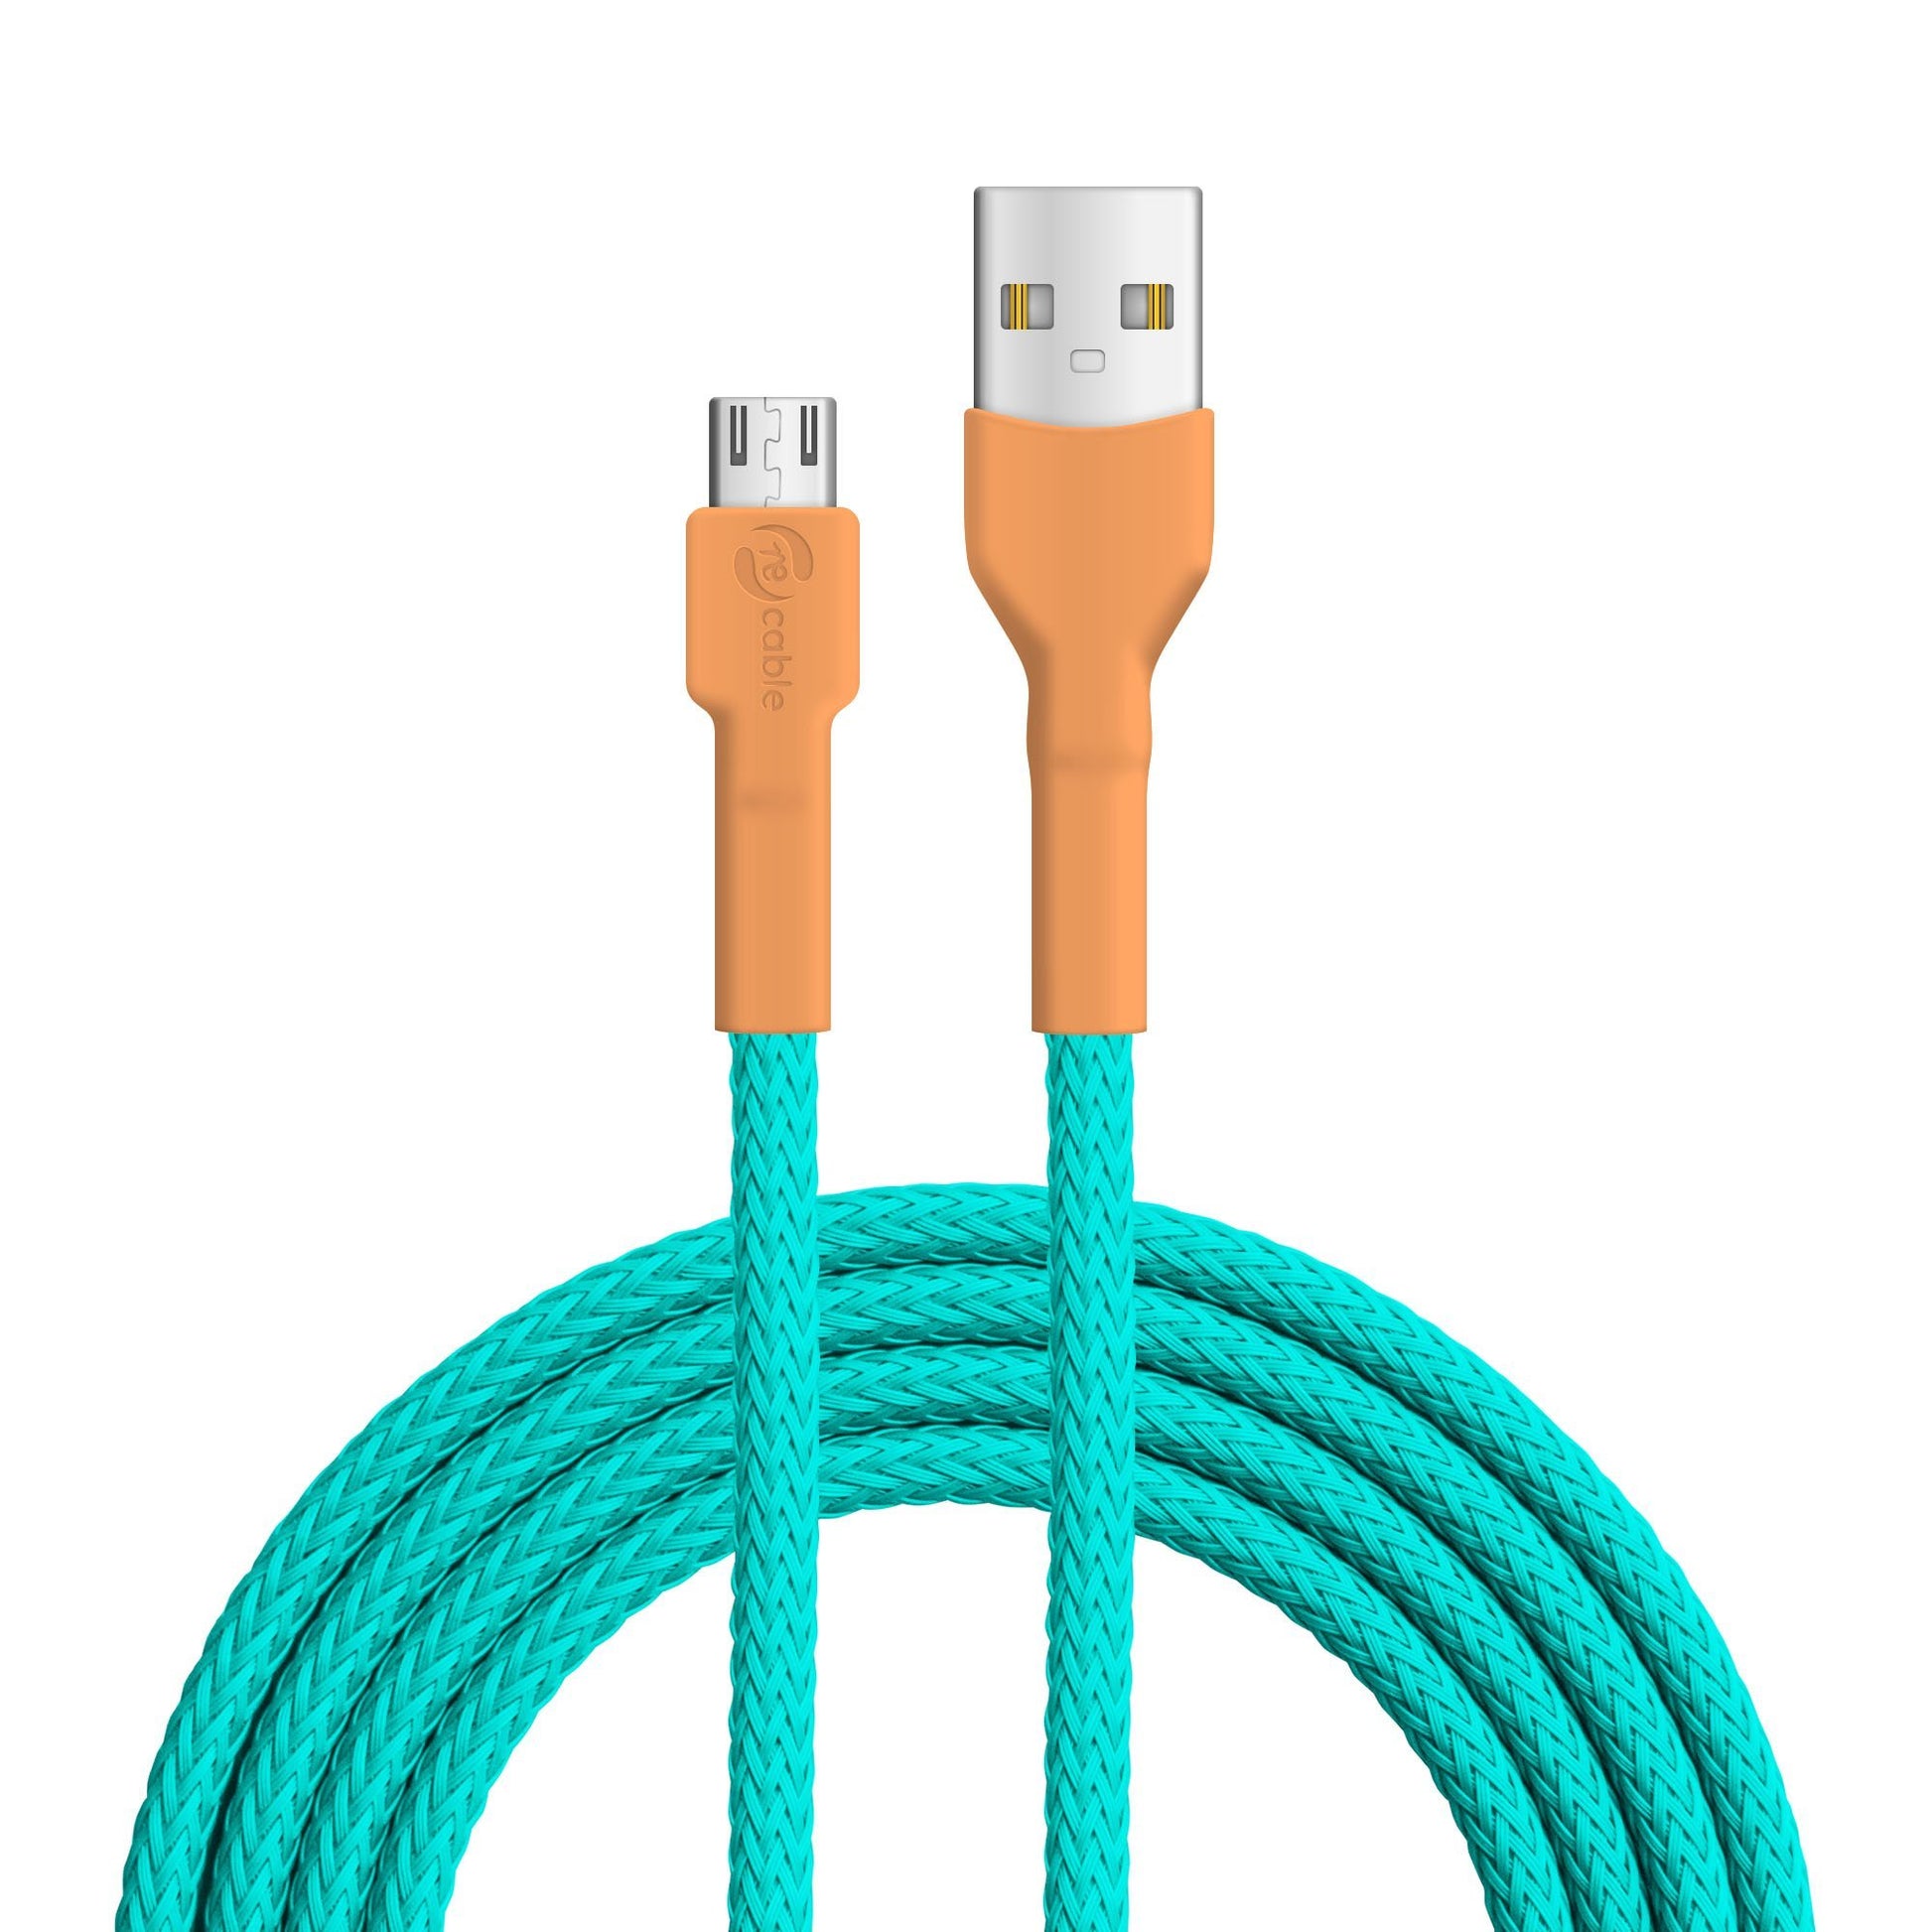 USB-Kabel, Design: Eisvogel, Anschlüsse: USB A auf Micro USB 